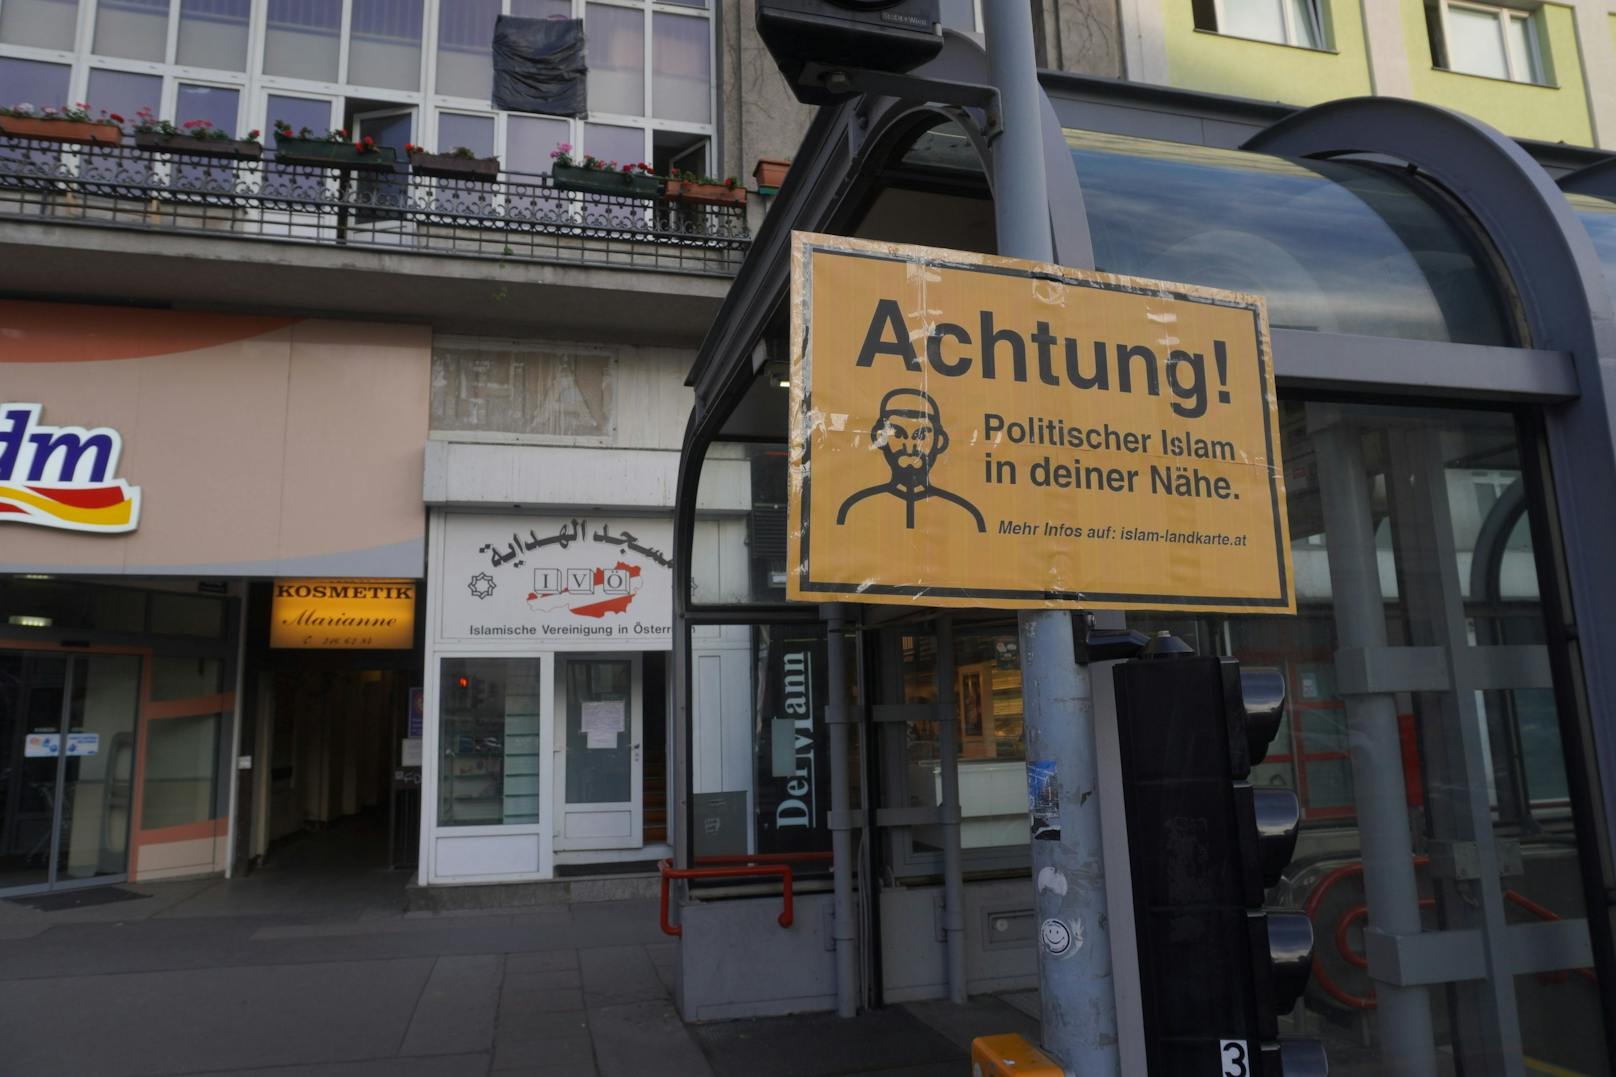 An mehreren Orten in Wien wurden diese Schilder entdeckt